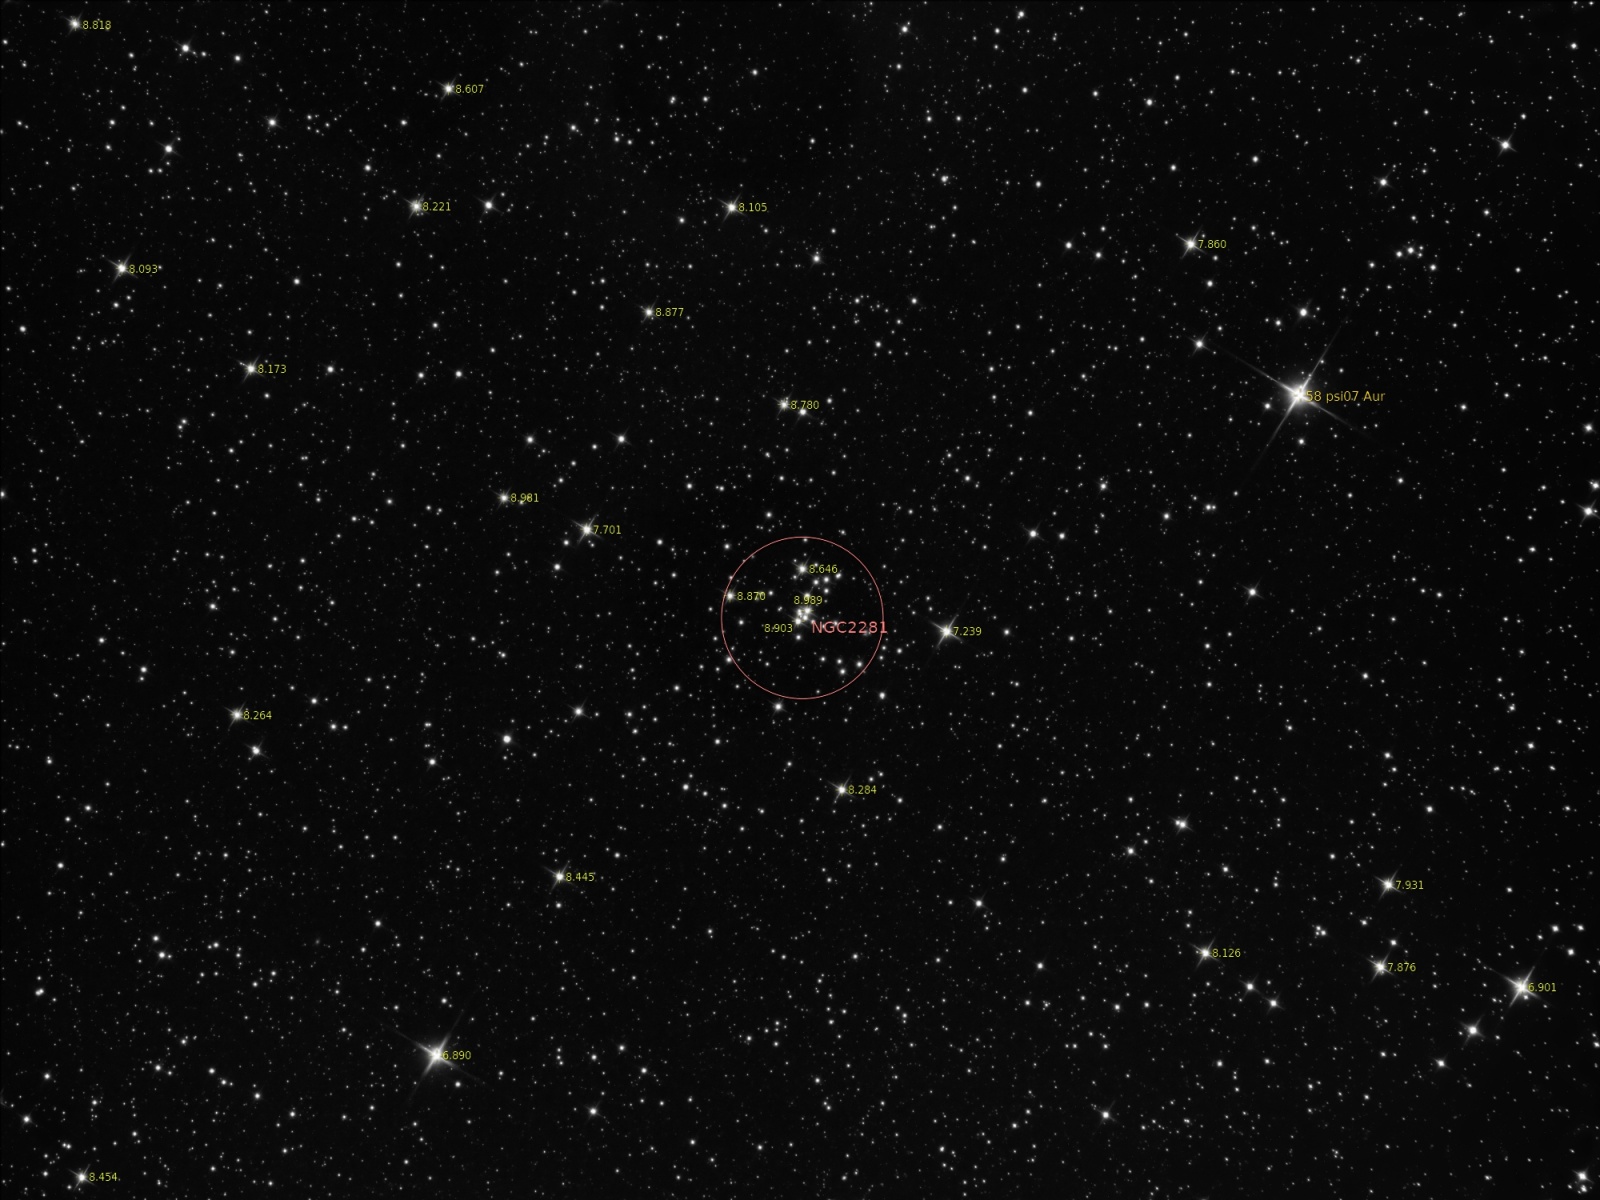 NGC2281_crop_4800_3600_DBE_resize_2000_1500_Annotated.thumb.jpg.cd0062225b2862ec2d209c837adbac9d.jpg